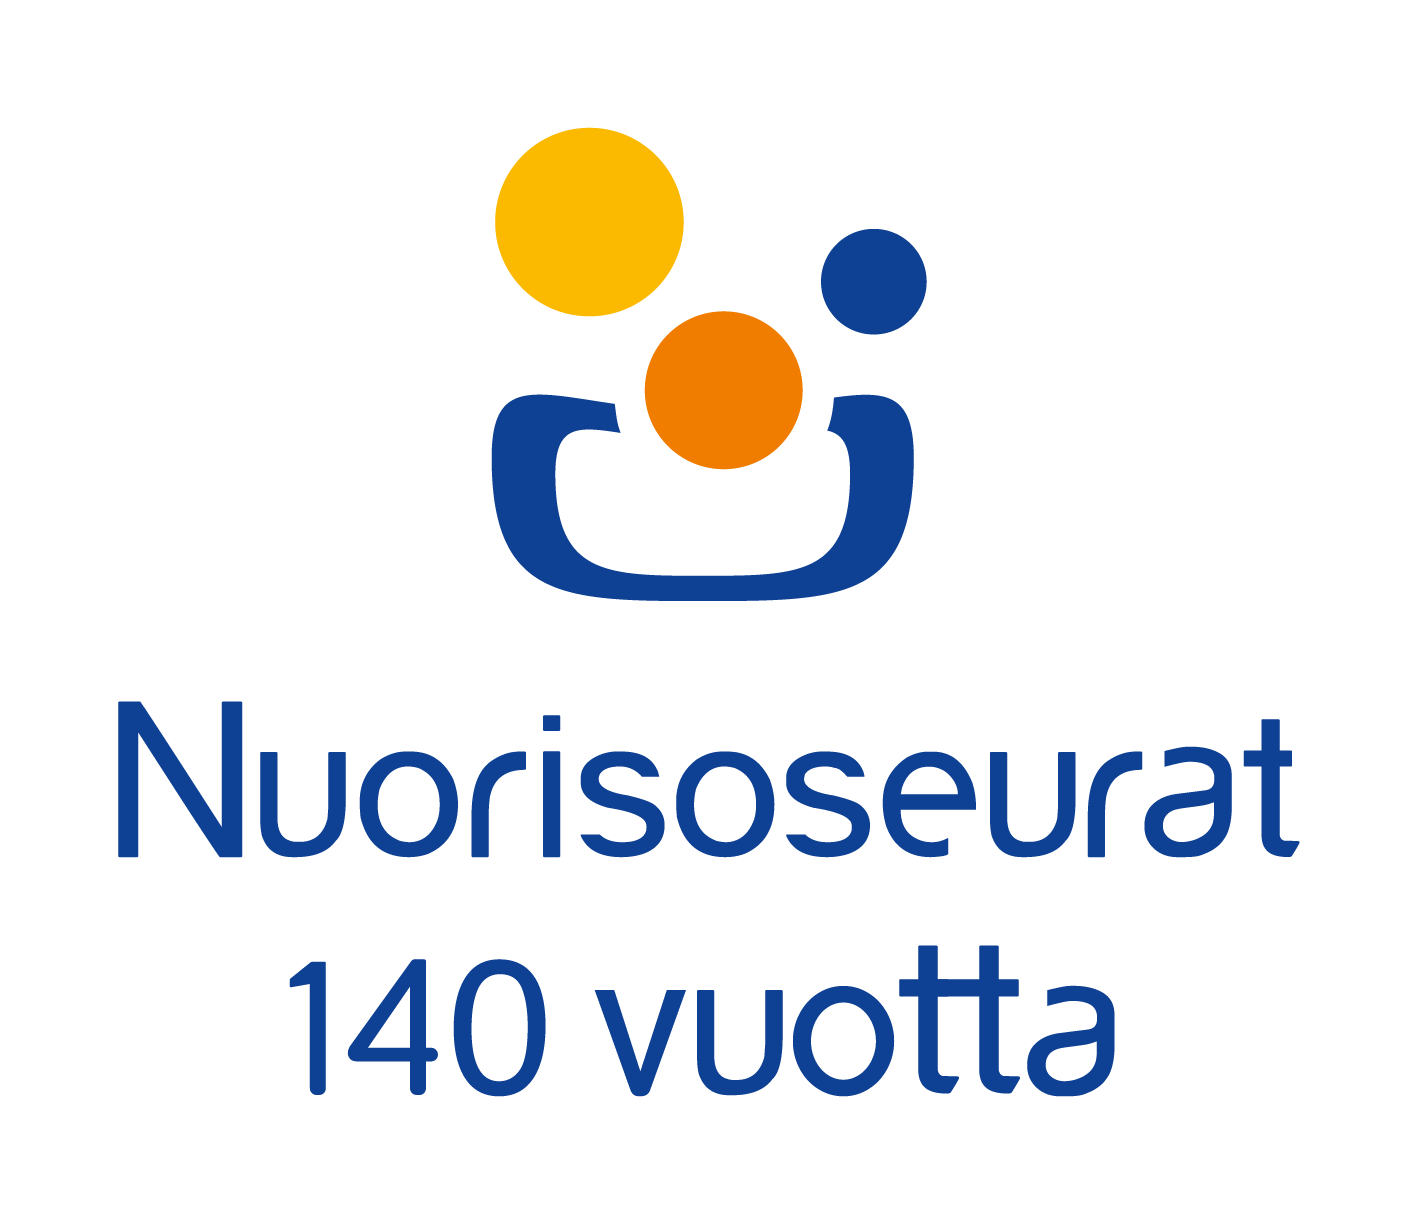 Nuorisoseurat 140 vuotta -logo